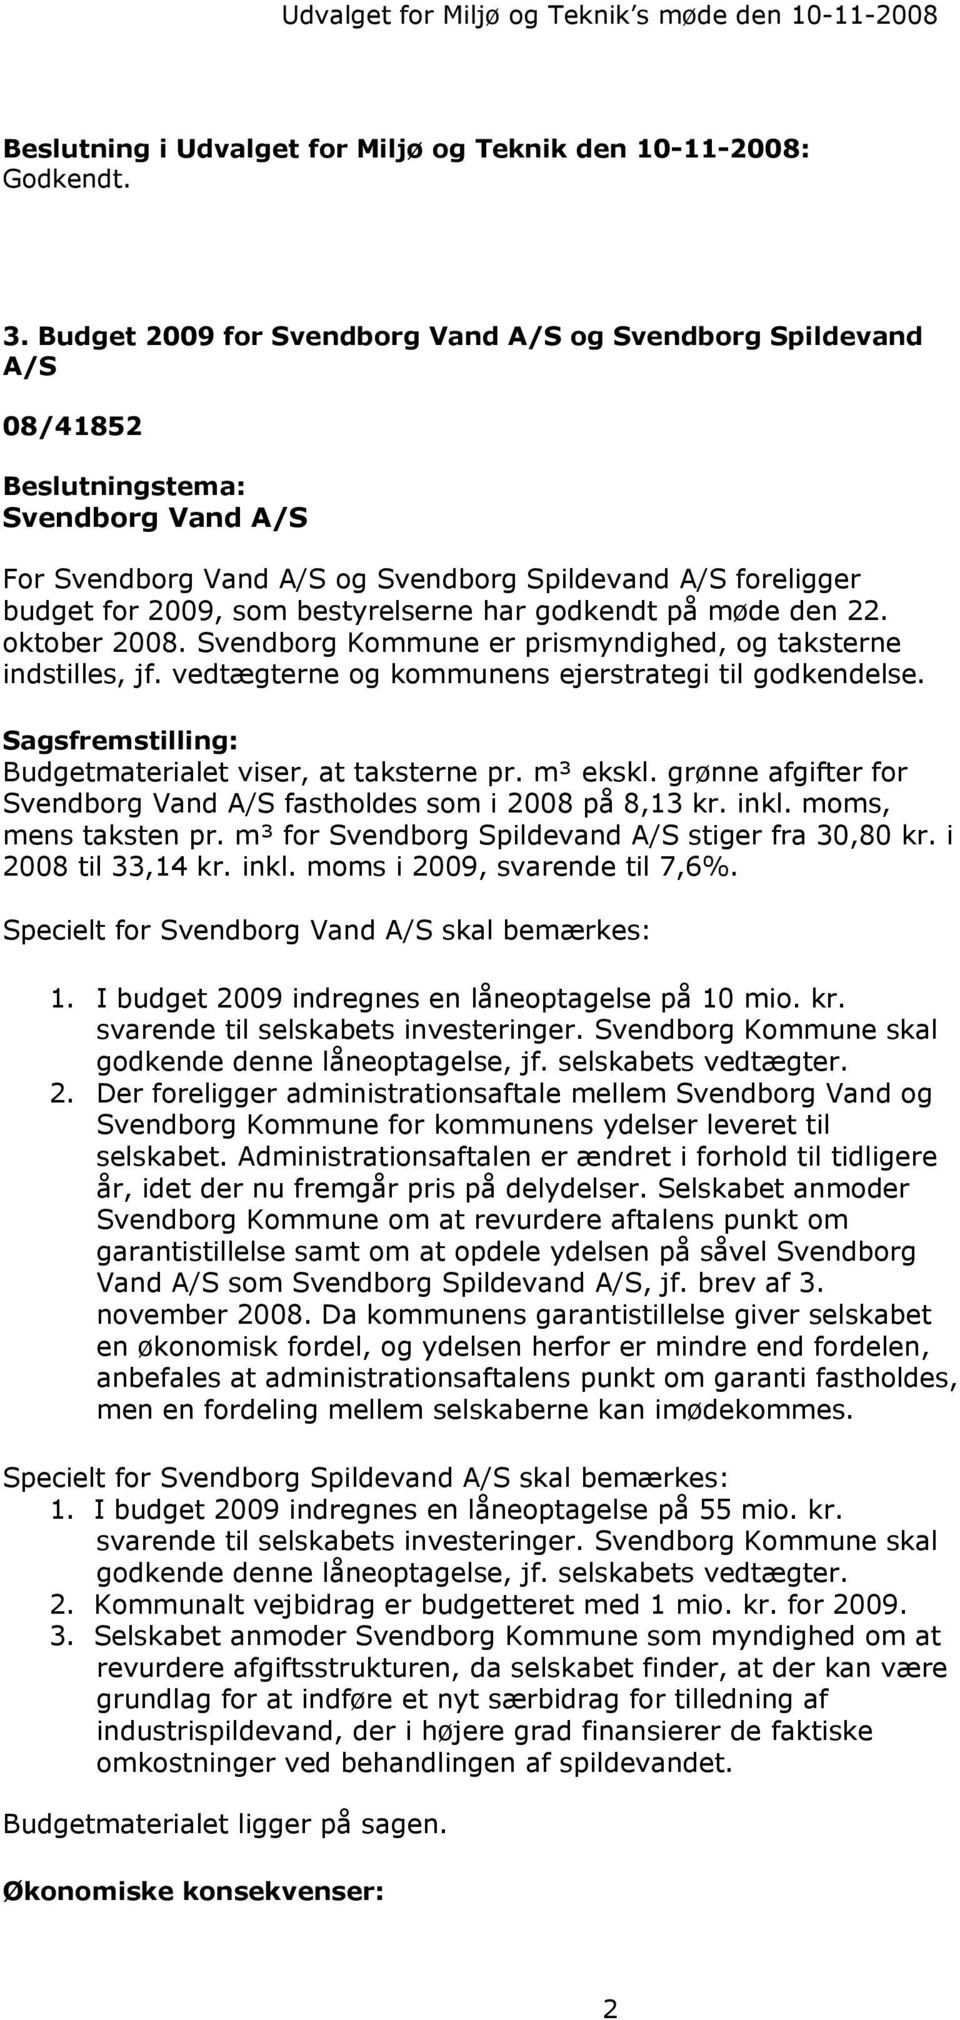 bestyrelserne har godkendt på møde den 22. oktober 2008. Svendborg Kommune er prismyndighed, og taksterne indstilles, jf. vedtægterne og kommunens ejerstrategi til godkendelse.